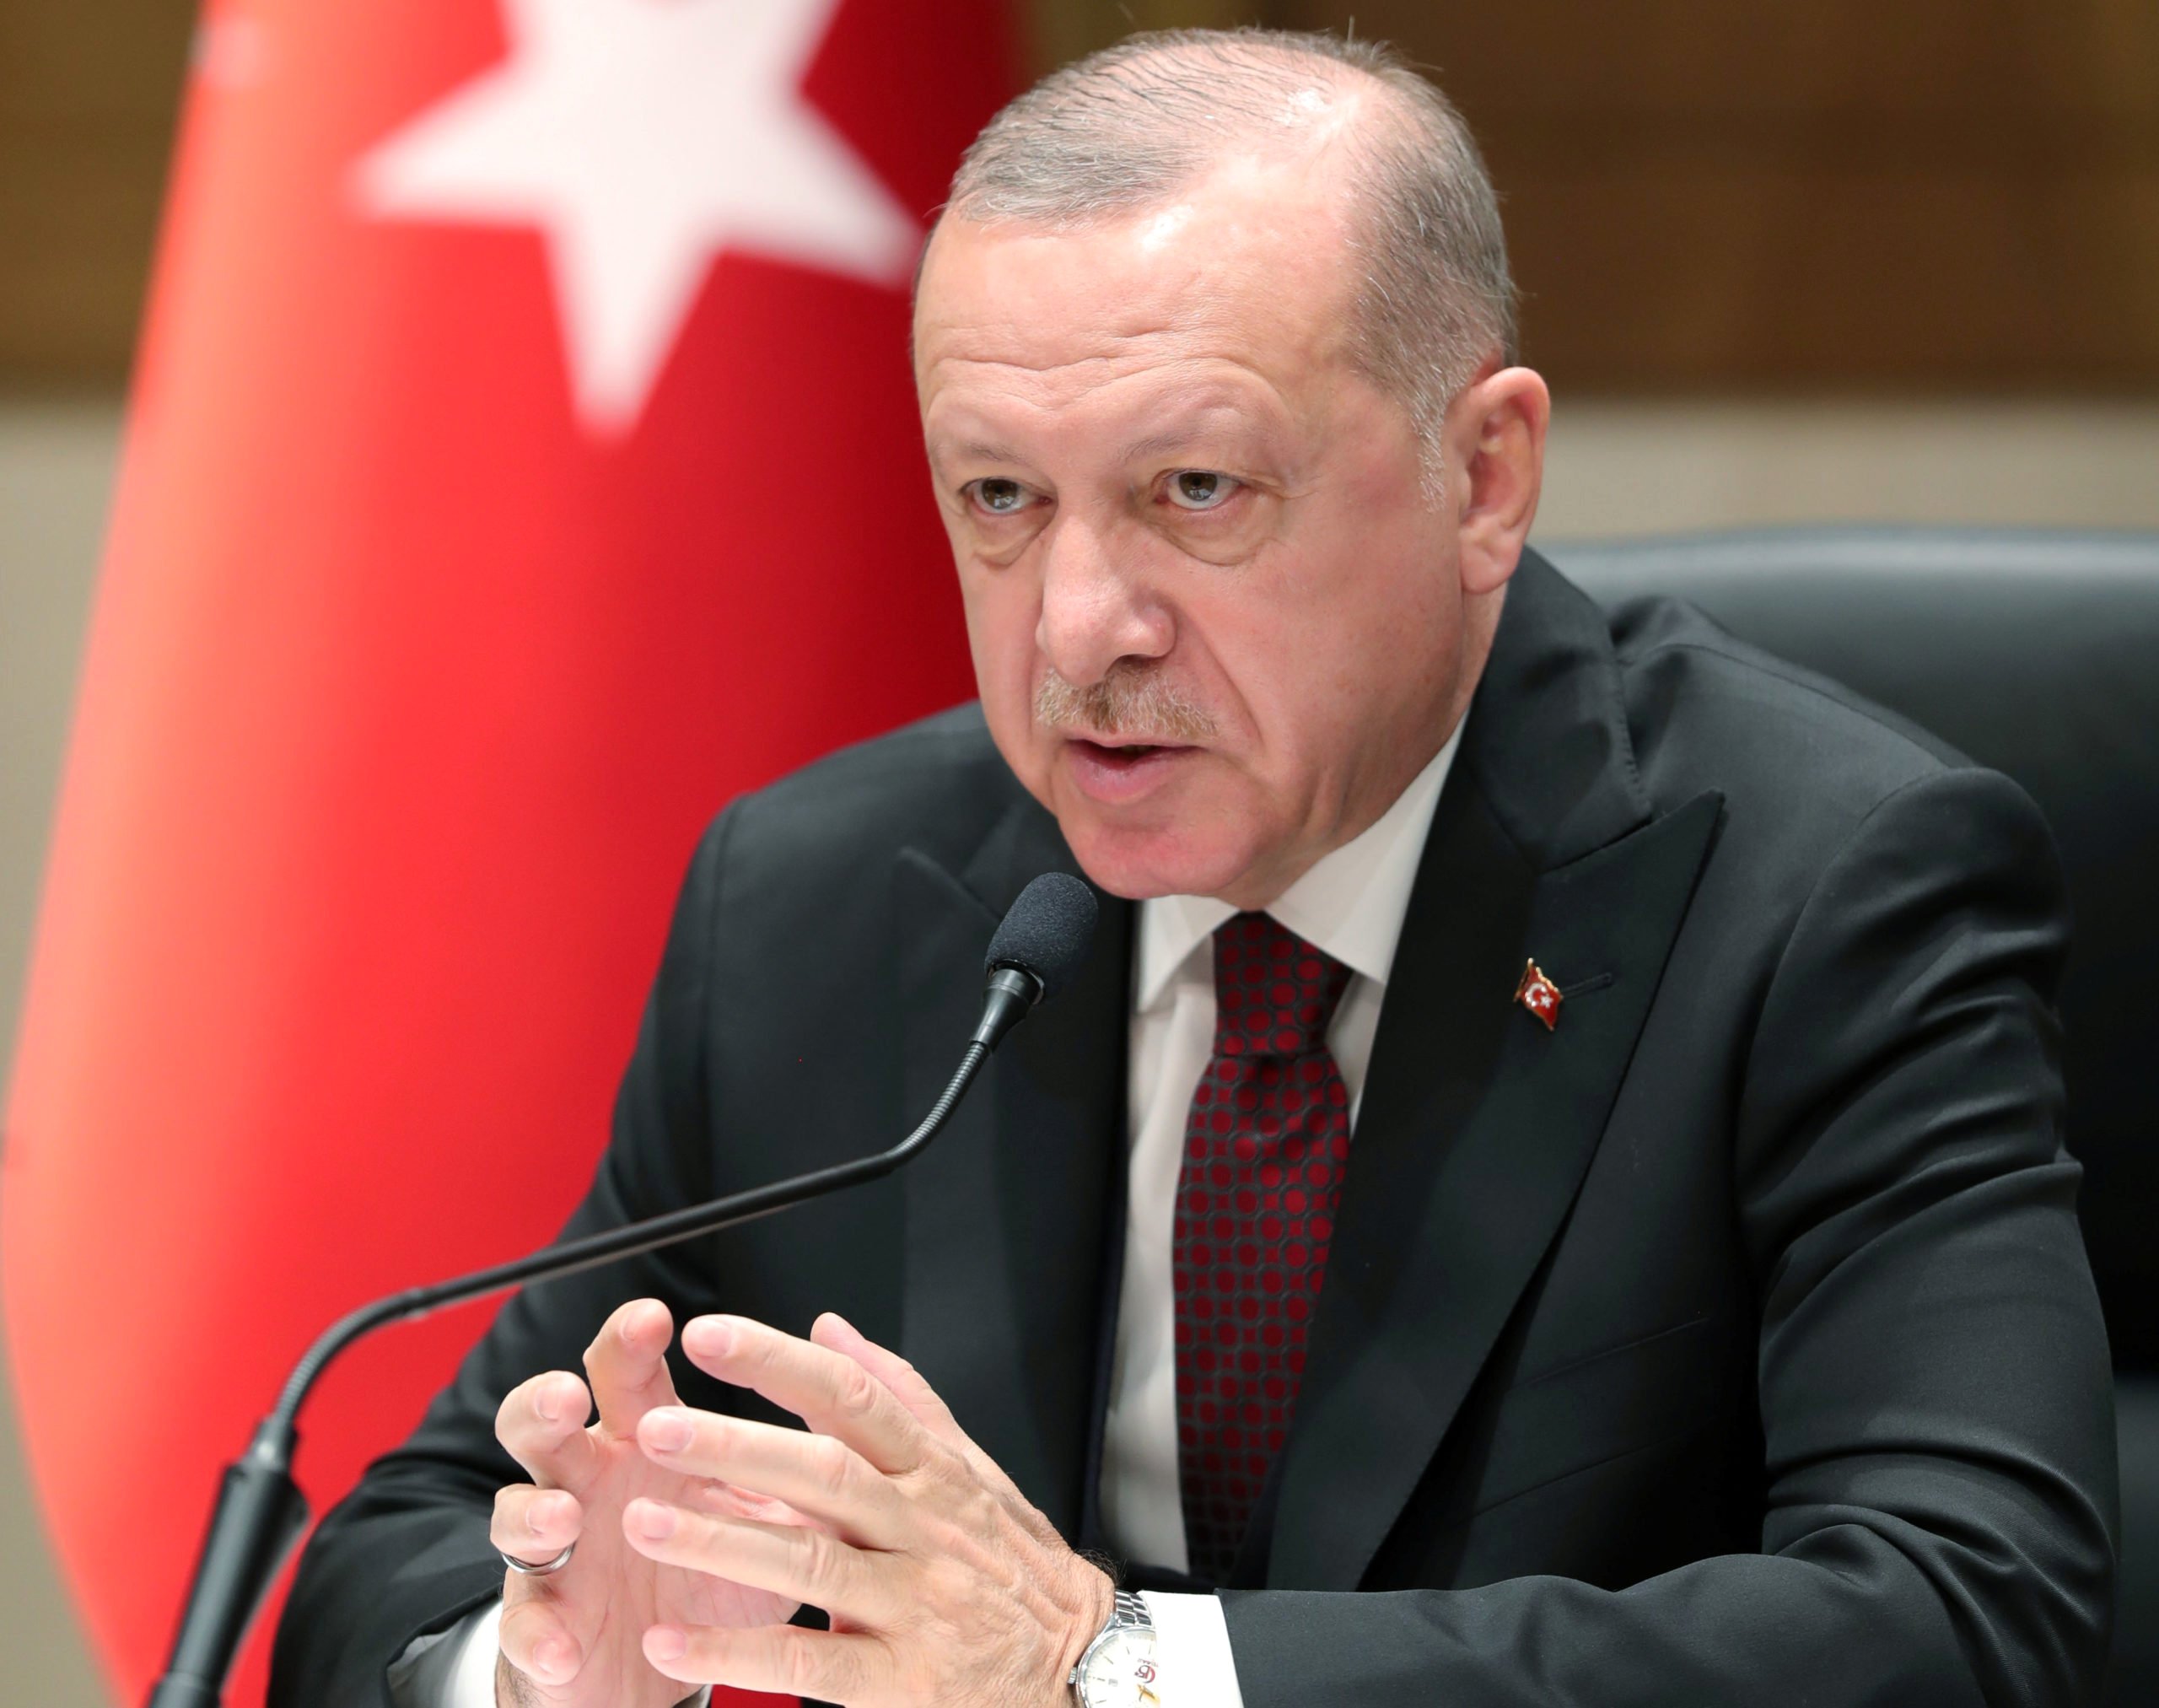 ՆԱՏՕ-ն կարծում է, որ Թուրքիան կարող է Ղրիմի վերաբերյալ տարածքային պահանջներ ունենալ 